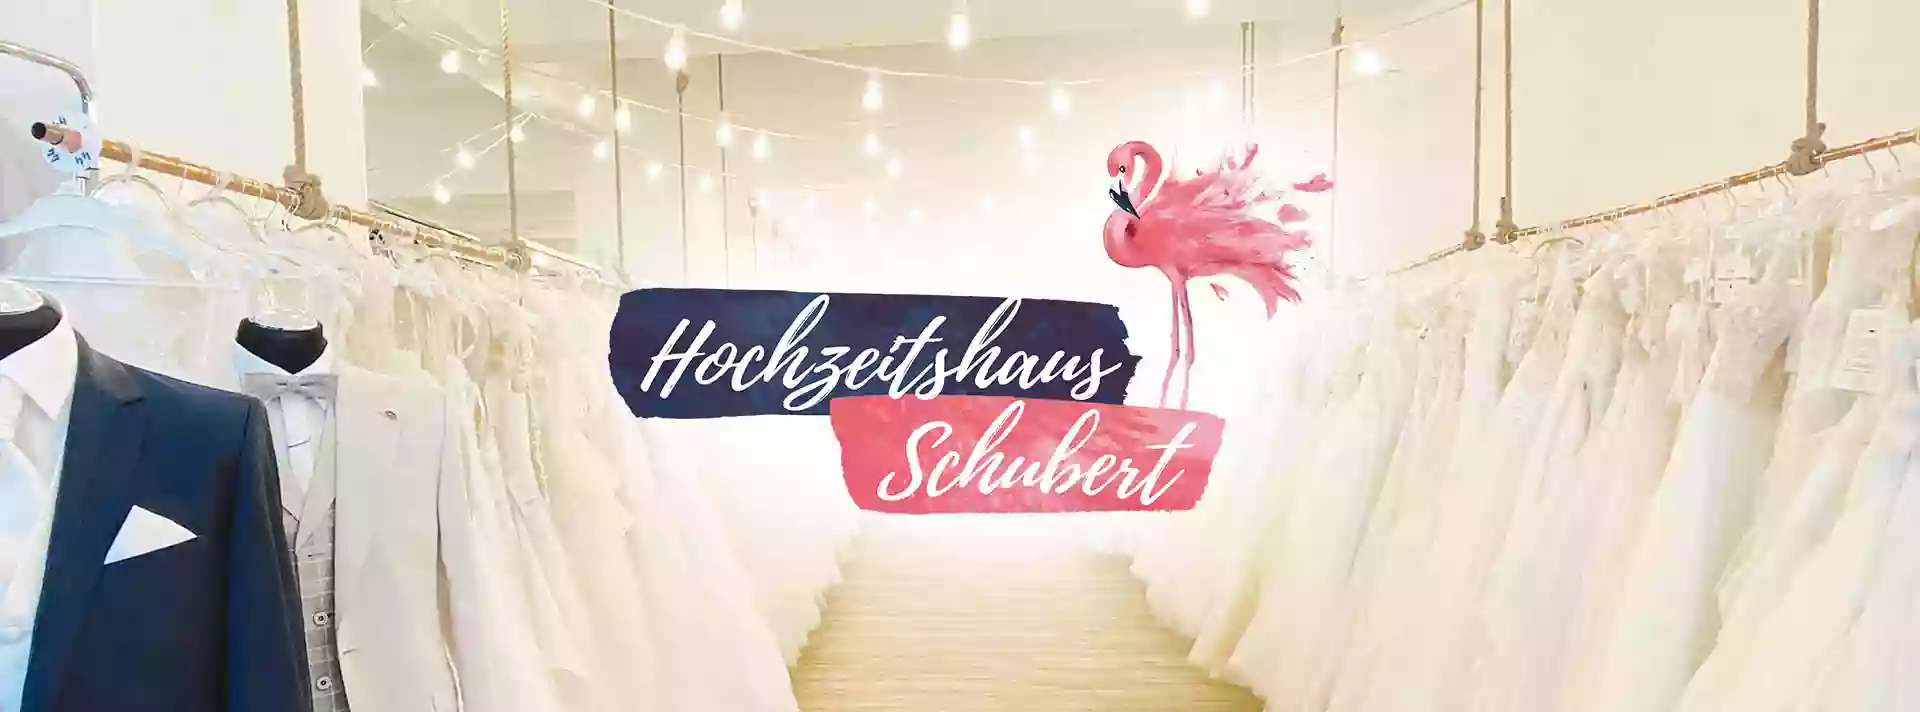 Hochzeitshaus Schubert - Brautmode Berlin / Brandenburg - Brautkleider und Hochzeitsanzüge - bitte Termin ausmachen